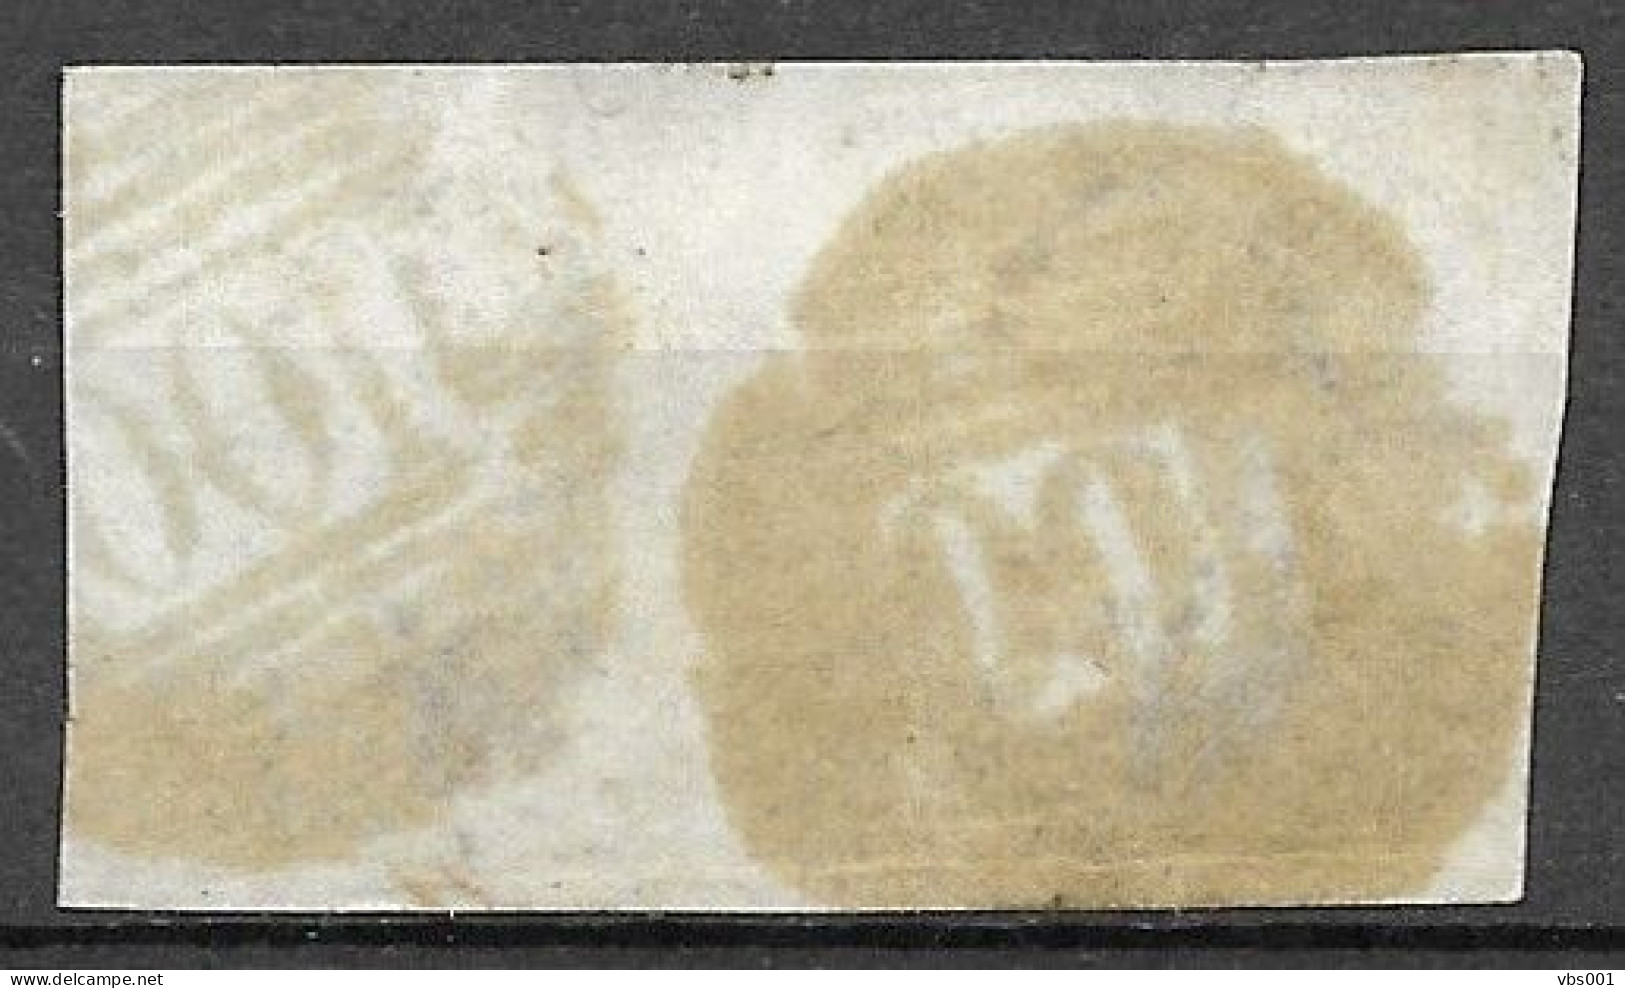 OBP10 In Paar, Met 4 Randen En Geburen, Met Balkstempel P100 Renaix (zie Scans) - 1858-1862 Medallions (9/12)